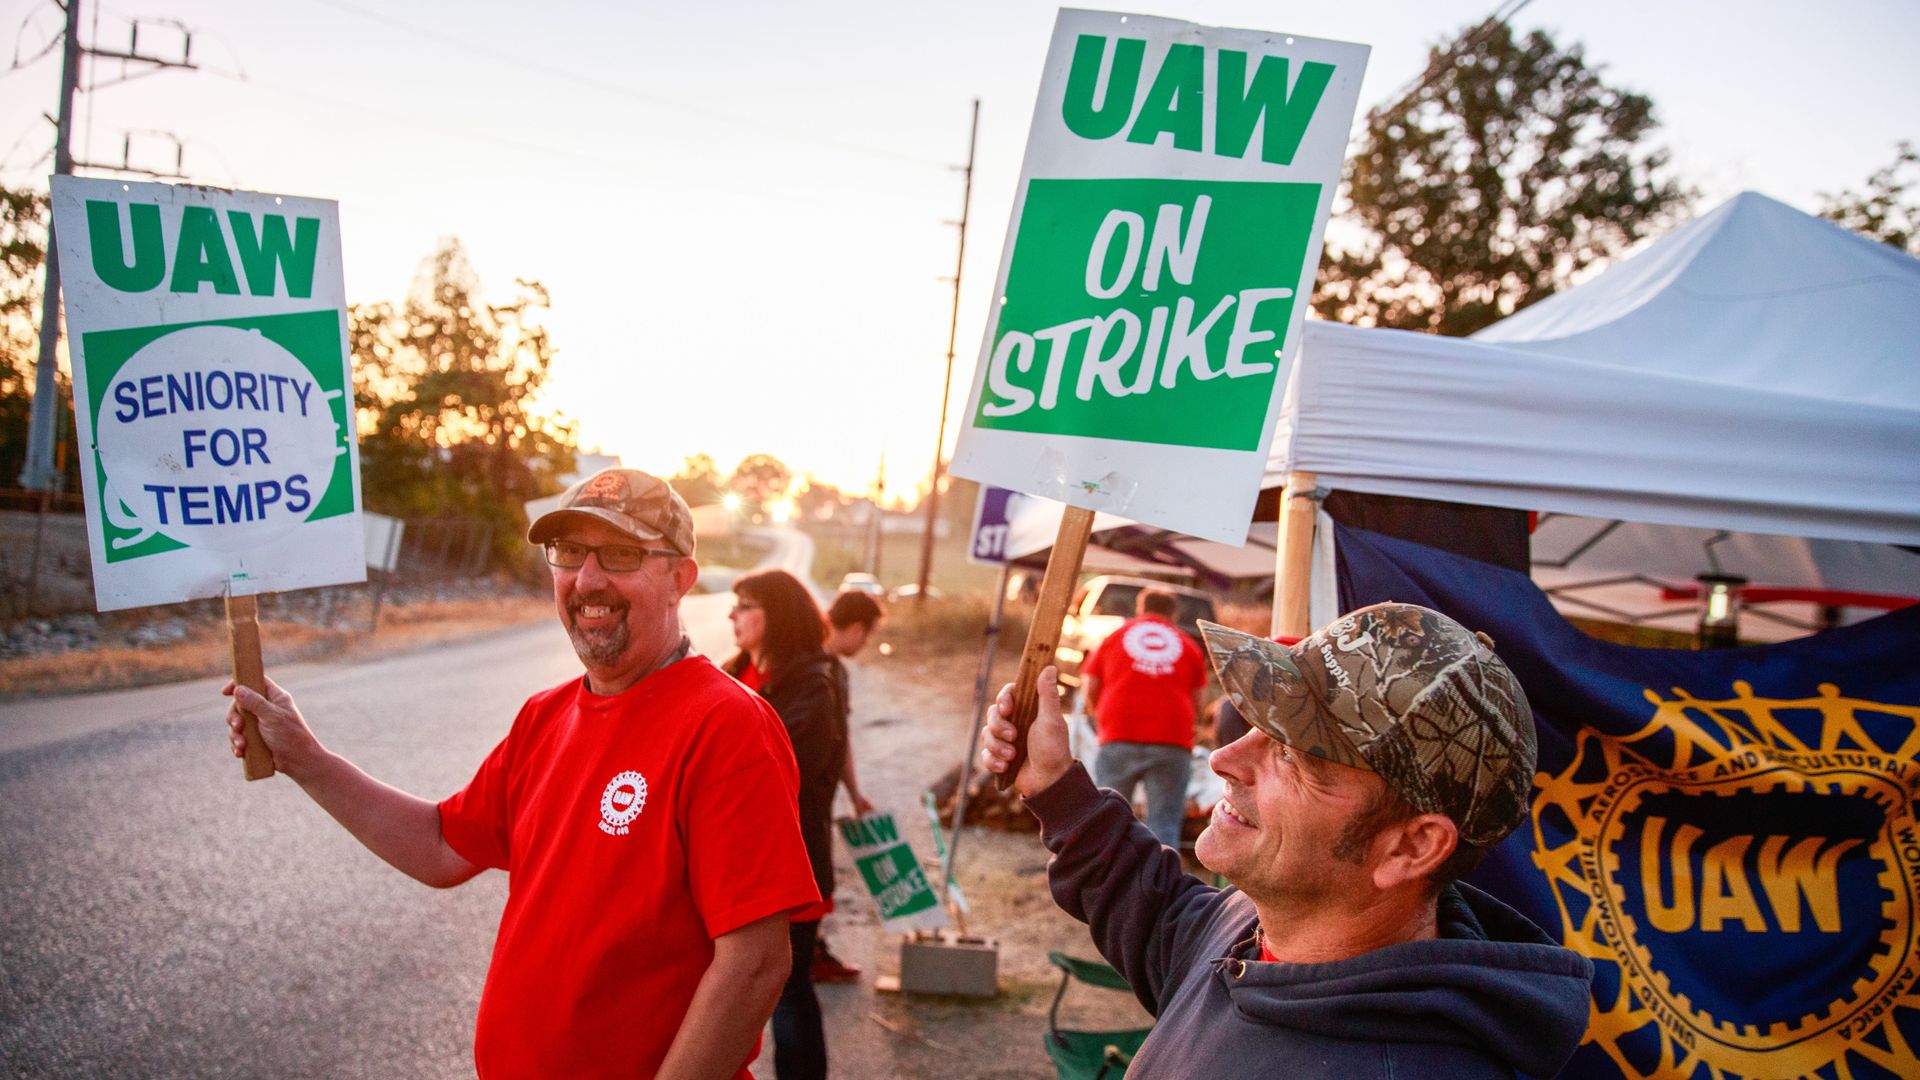 UAW members striking.